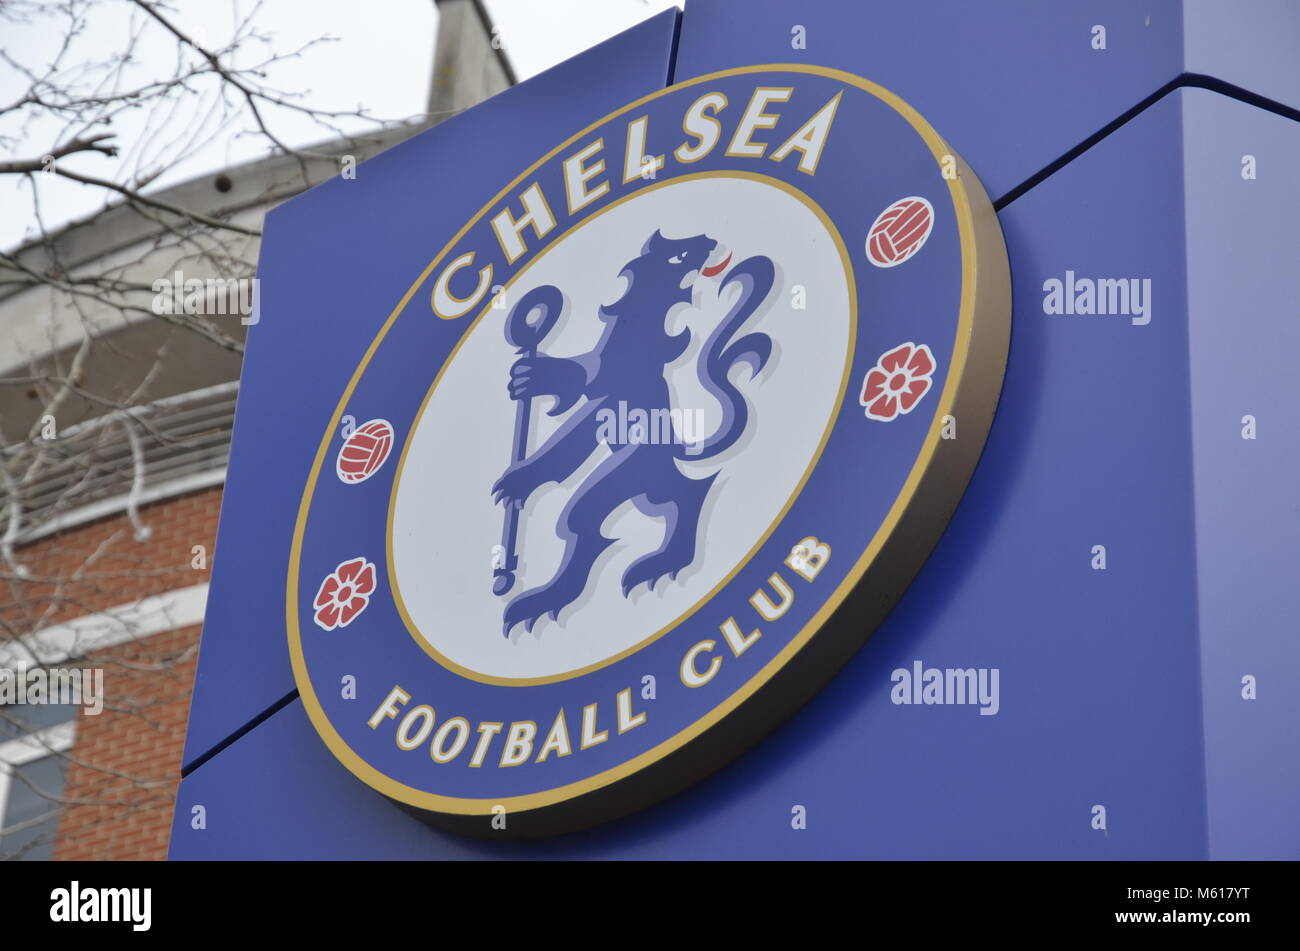 Bienvenue à un stade de Stamford Bridge dans l'ouest de Londres, accueil de Chelsea Football Club de la Premier League anglaise Banque D'Images